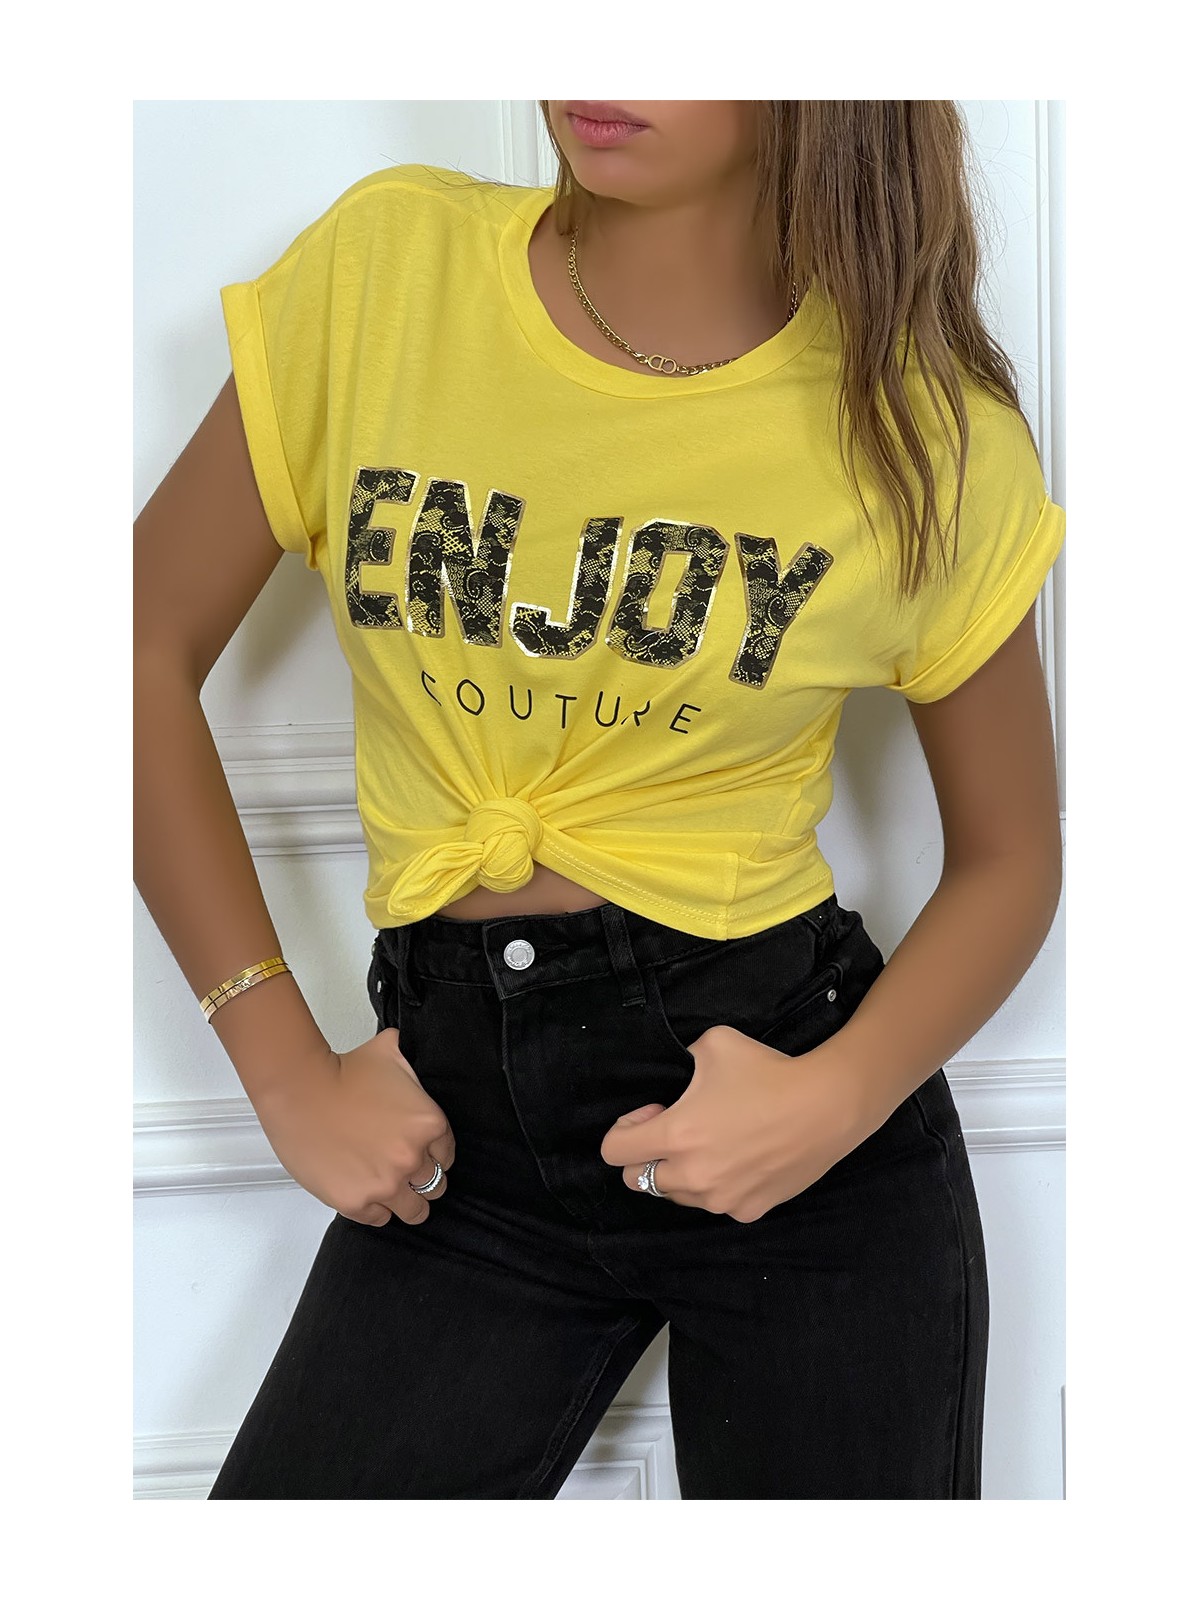 T-EEirt jaune ENJOY avec manches revers et coupe loose. T-shirt femme fashion - 4